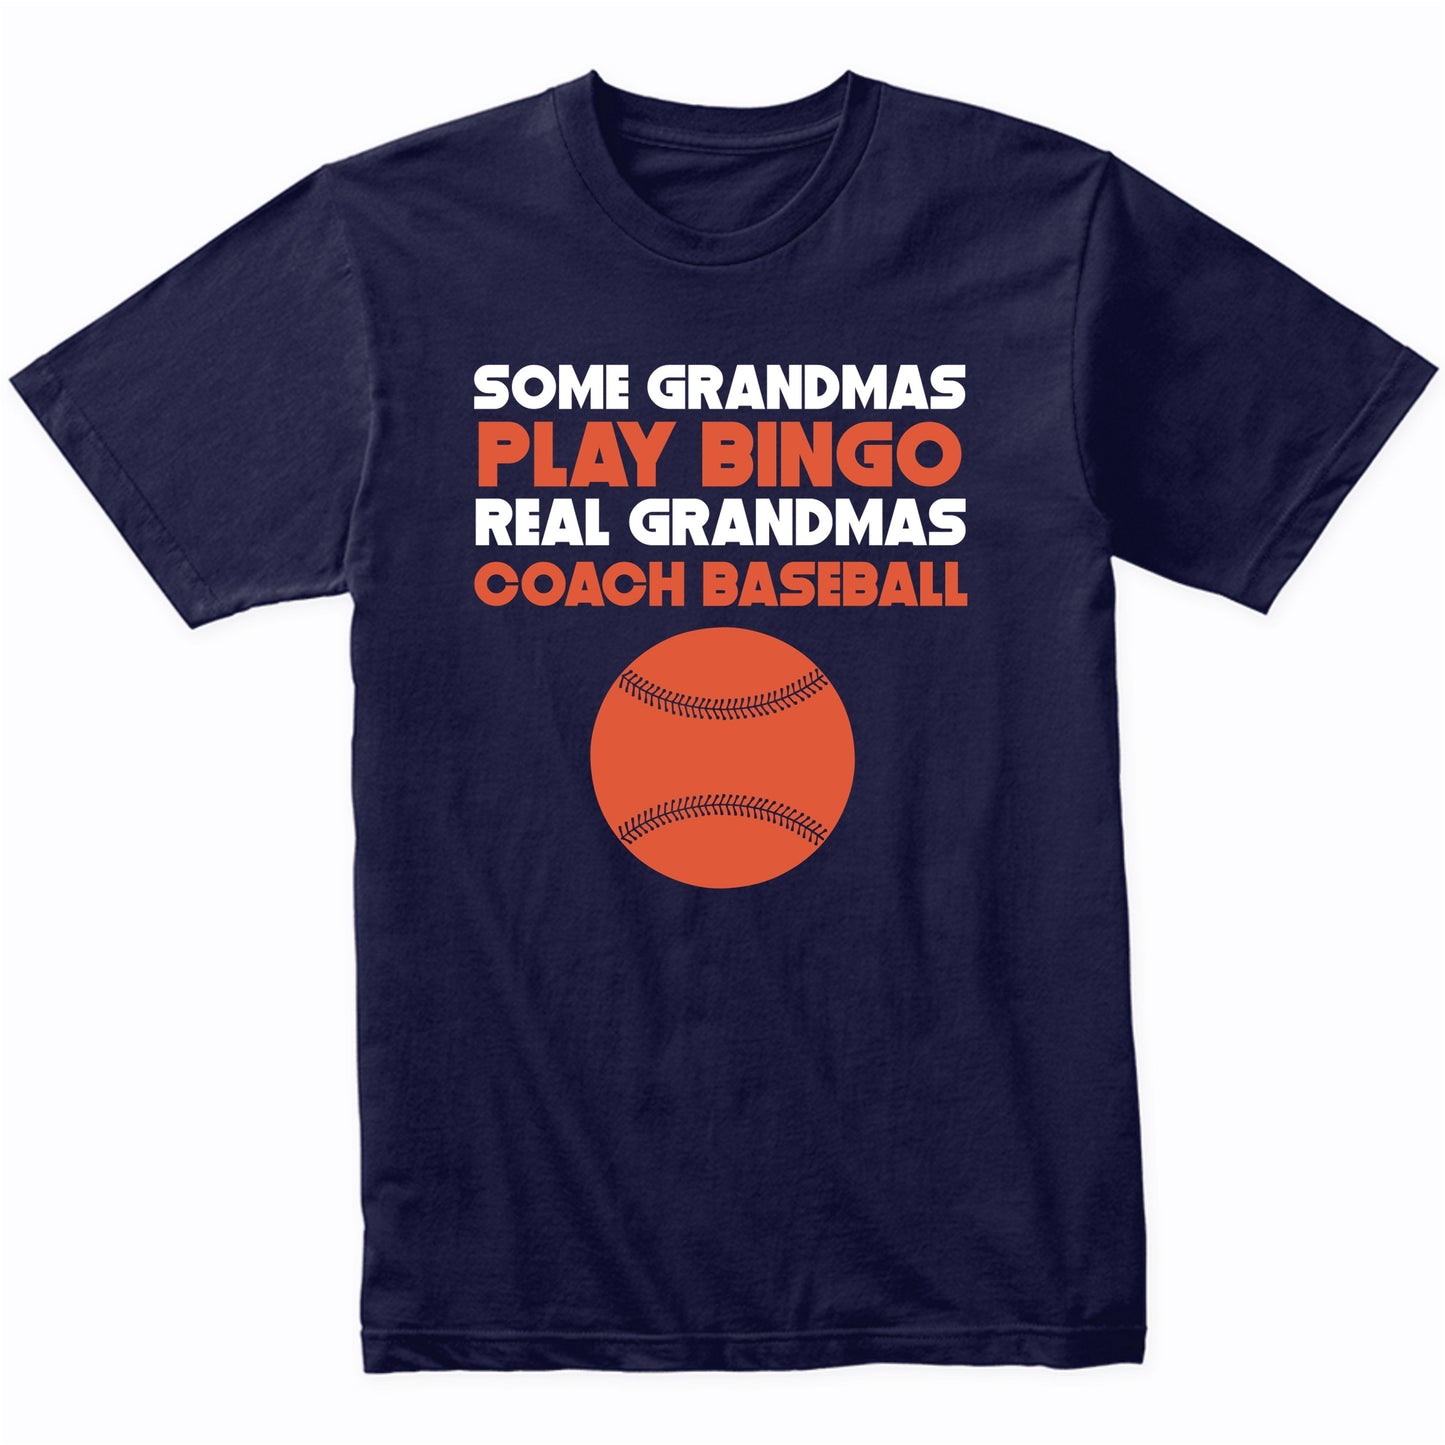 Some Grandmas Play Bingo Real Grandmas Coach Baseball Shirt